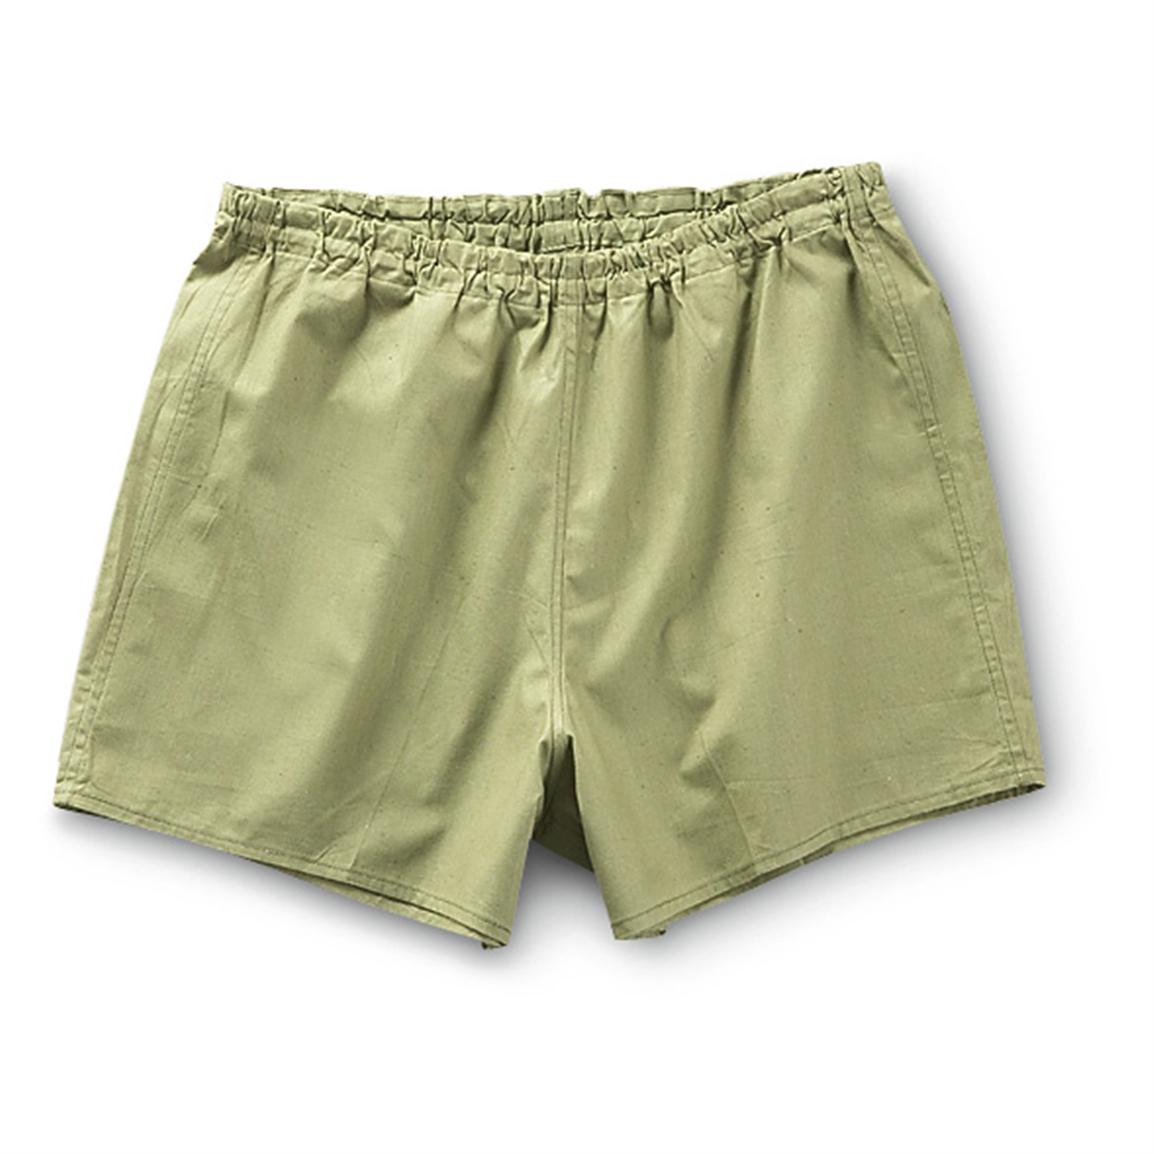 10 New Men's Czech Military Surplus Underwear, Brown - 211282 ...